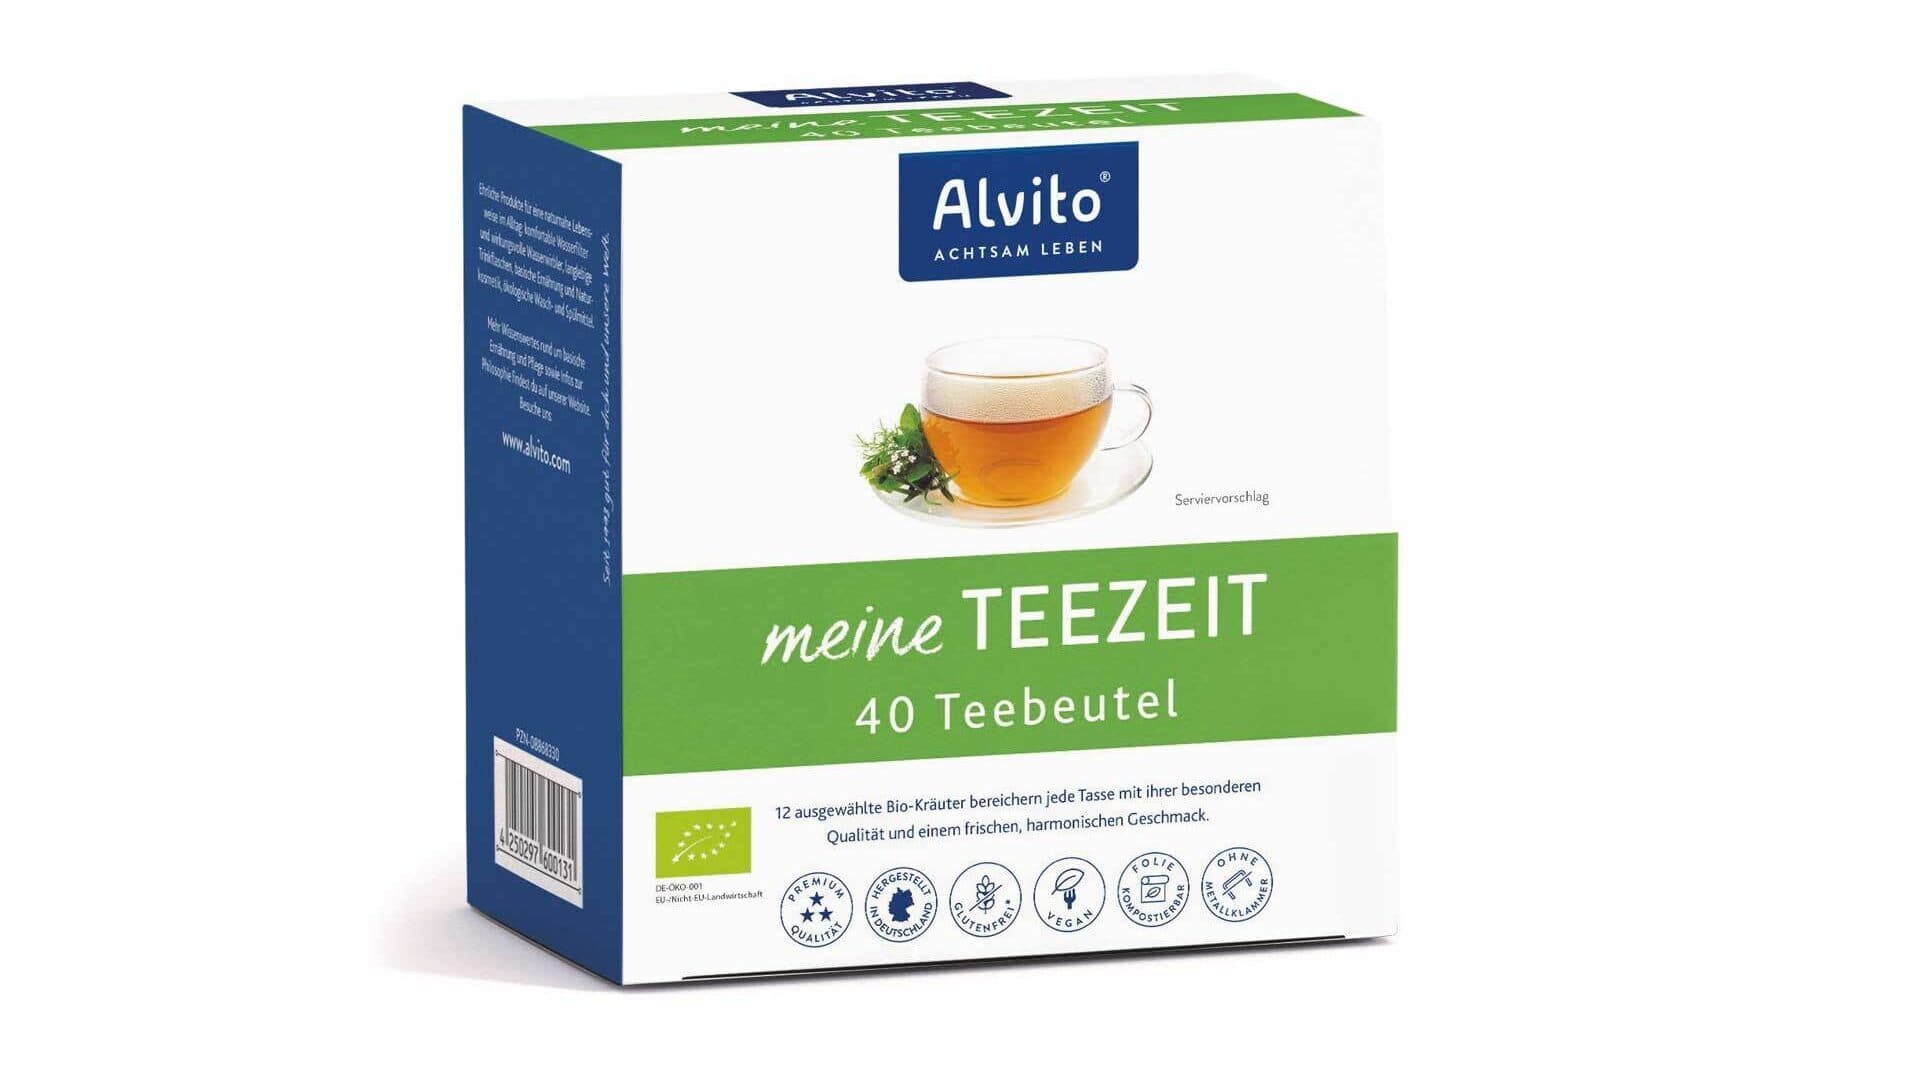 Alvito Teezeit